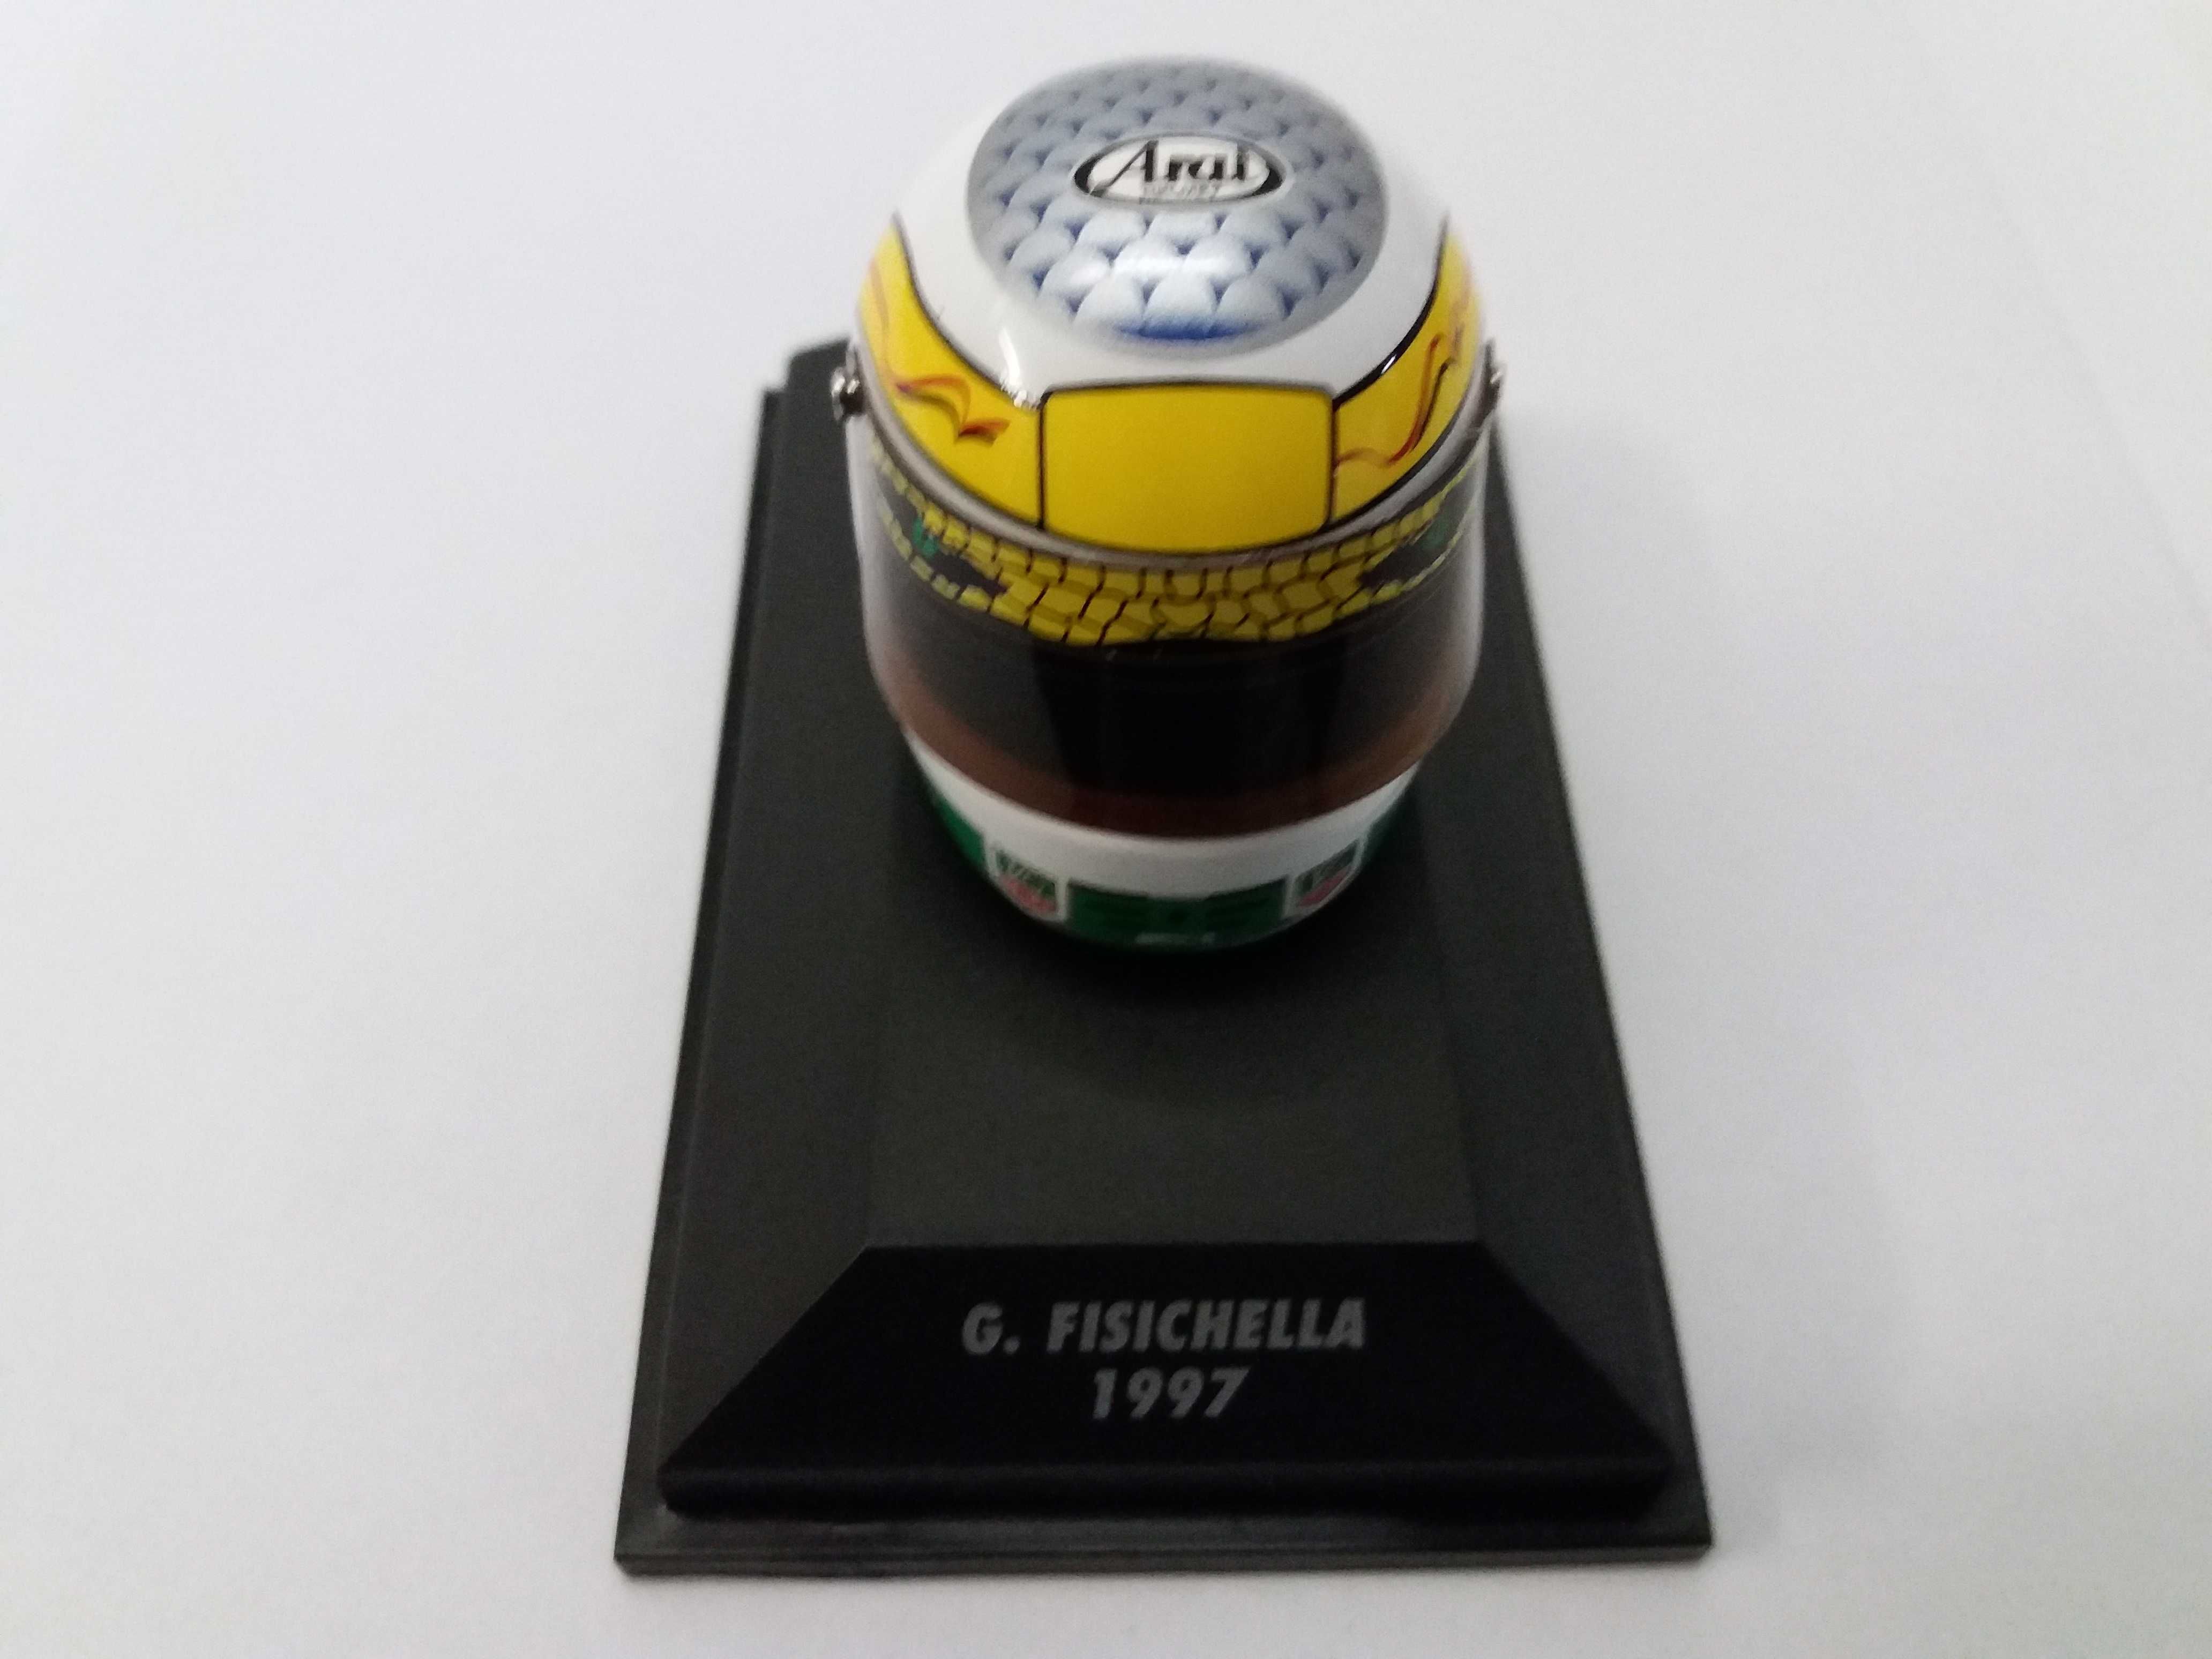 Giancarlo Fisichella F1 1997 capacete Minichamps